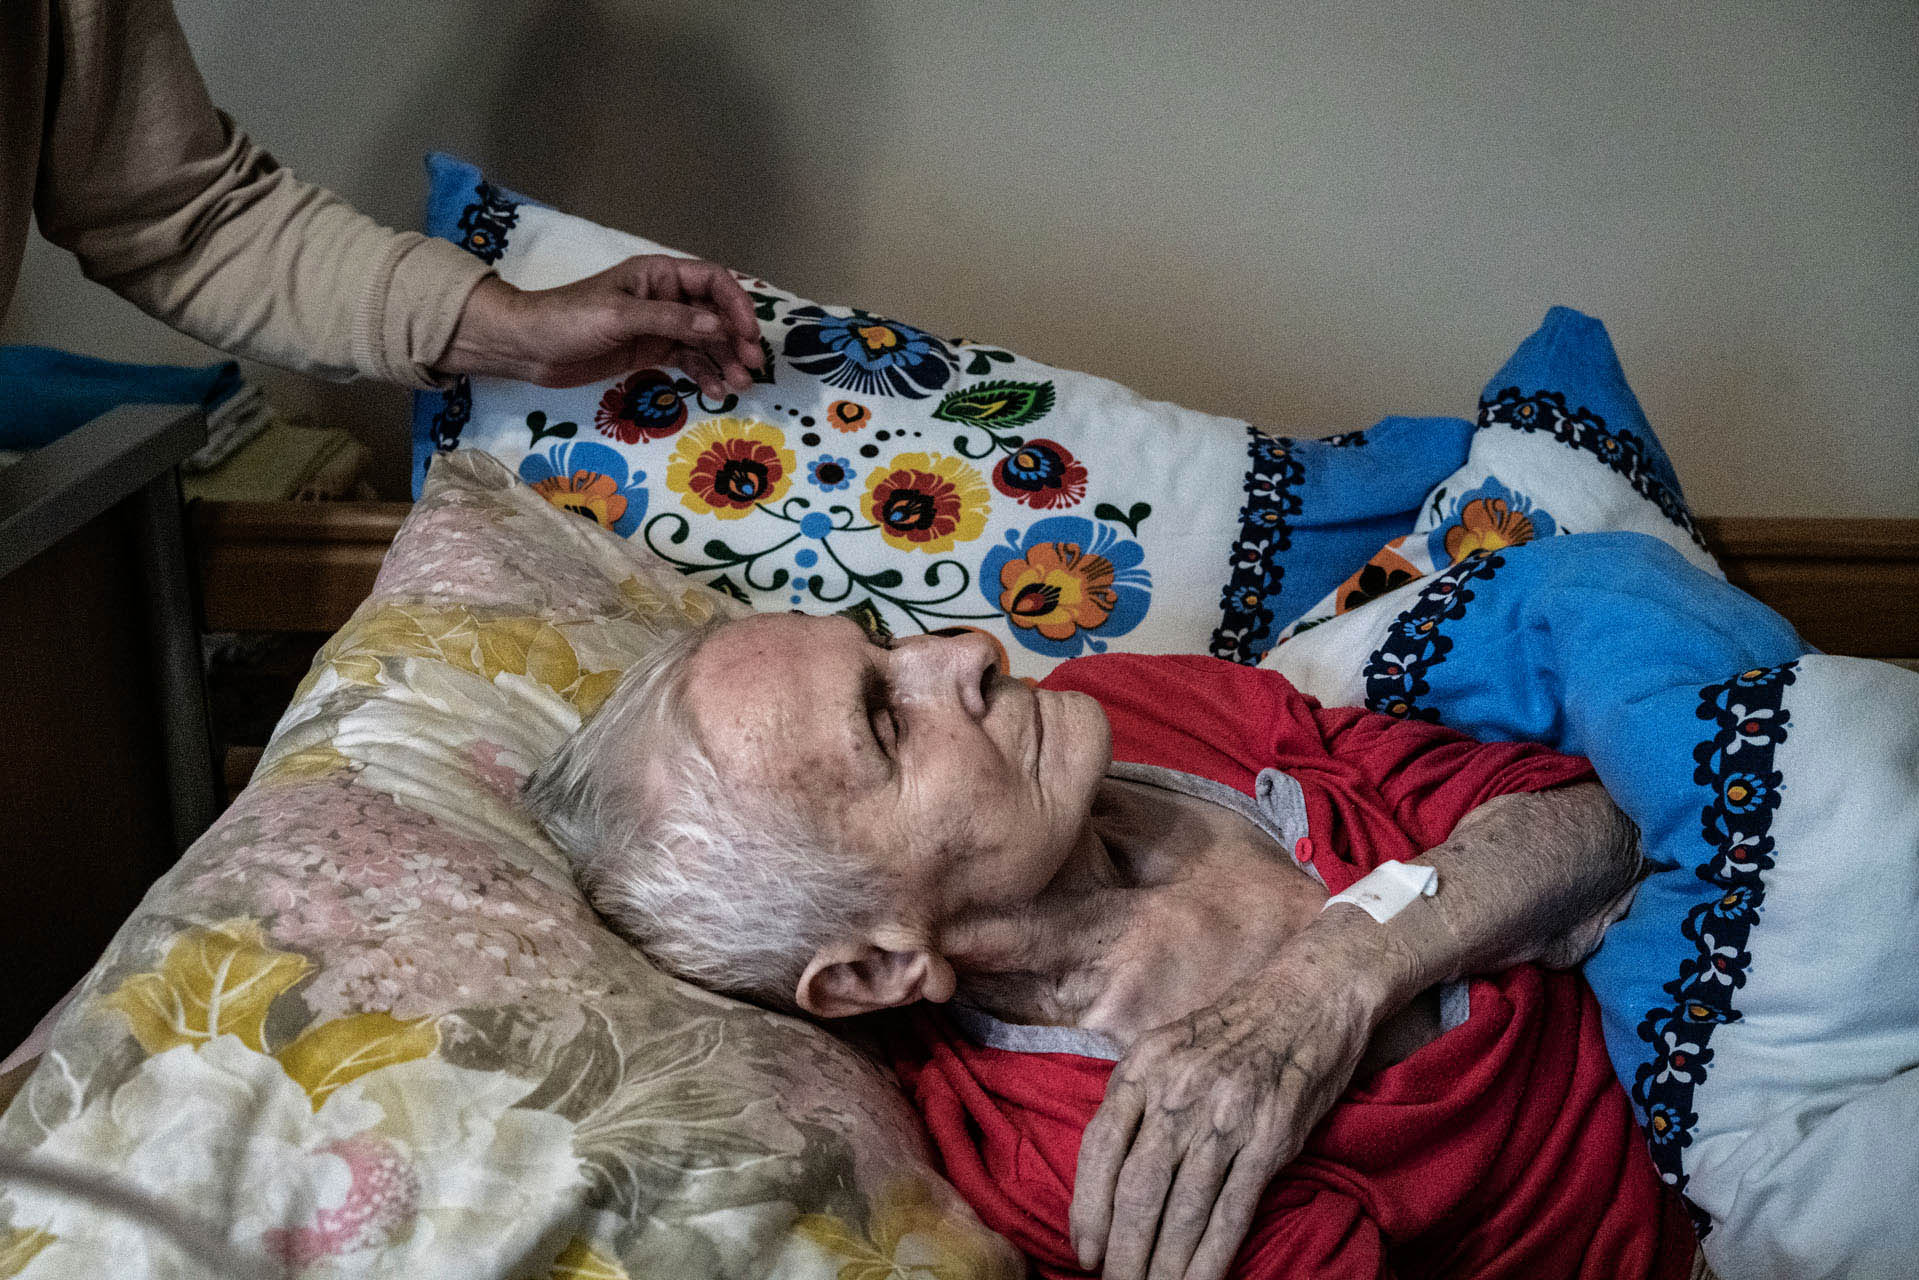 95 letnia kobieta z objawami udaru. Pod stałą opieką córki, zadbana i objęta troską. Ratownik ma obowiązek przetransportować chorą do szpitala. Jednak istnieje ryzyko, że pacjentka nie wróci już do domu. Rodzi się pytanie, gdzie są granice ratowania ludzkiego życia.
